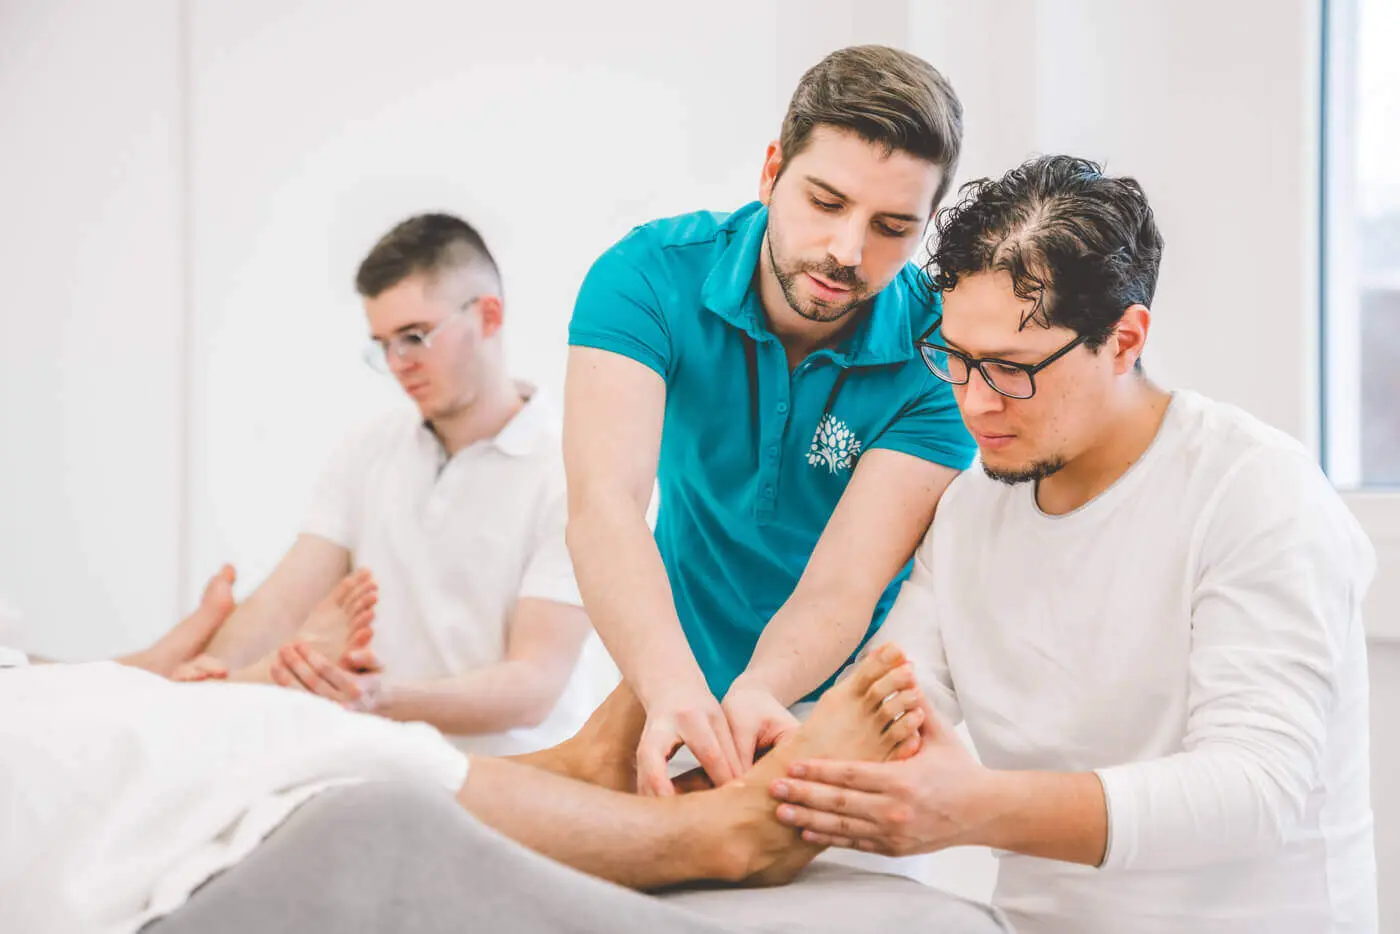 Die Fußreflexzonen Massage ist komplexer als sie zunächst scheint. Bei dieser Form der Massage gibt es vieles zu beachten.